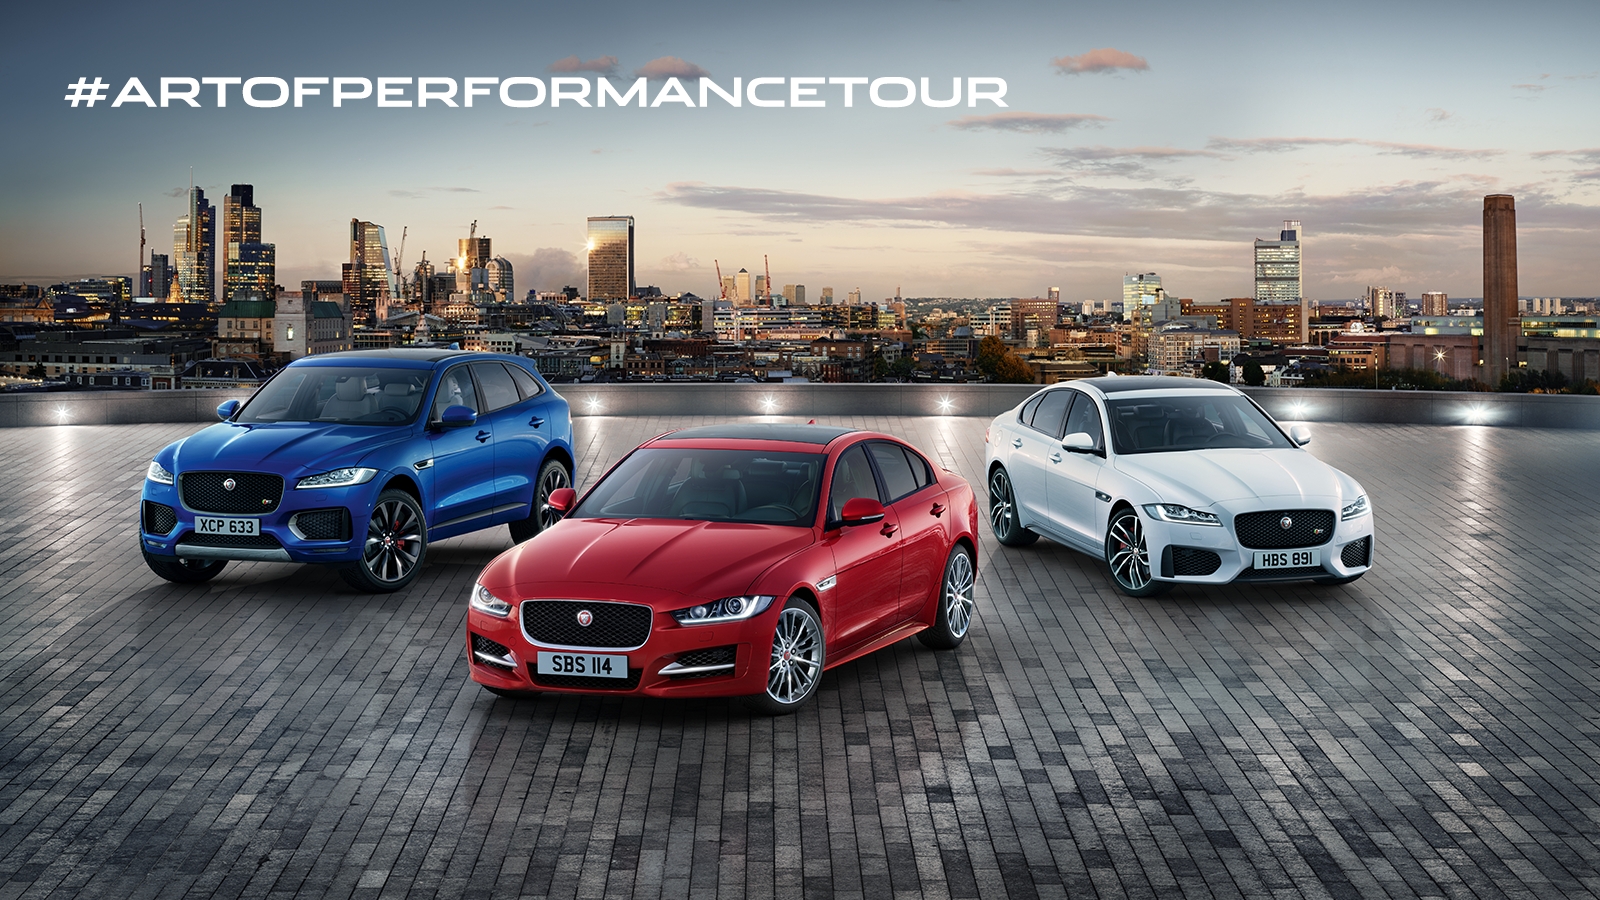 “The Art of Performance”: prestazioni ed eleganza nel Tour firmato Jaguar